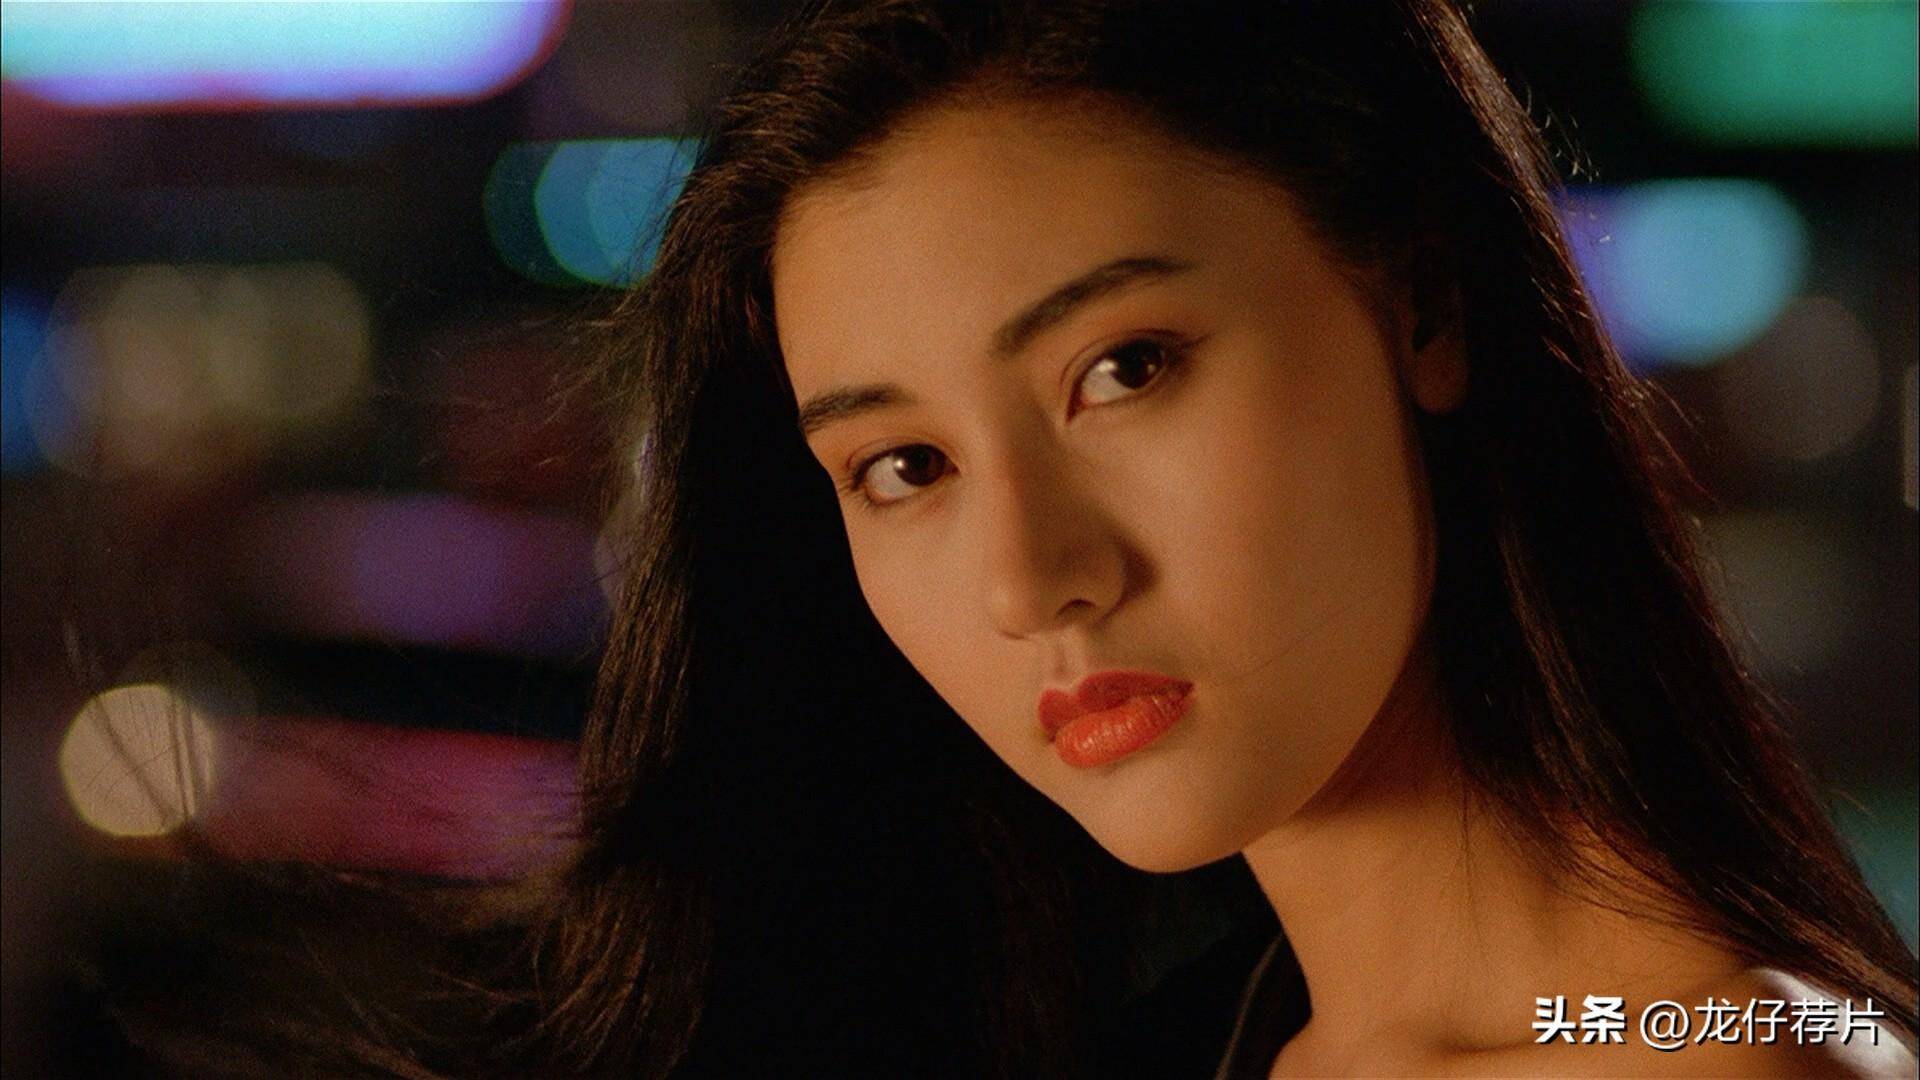 香港电影九十年代的十大绝色美人,这才是盛世美颜的巅峰!